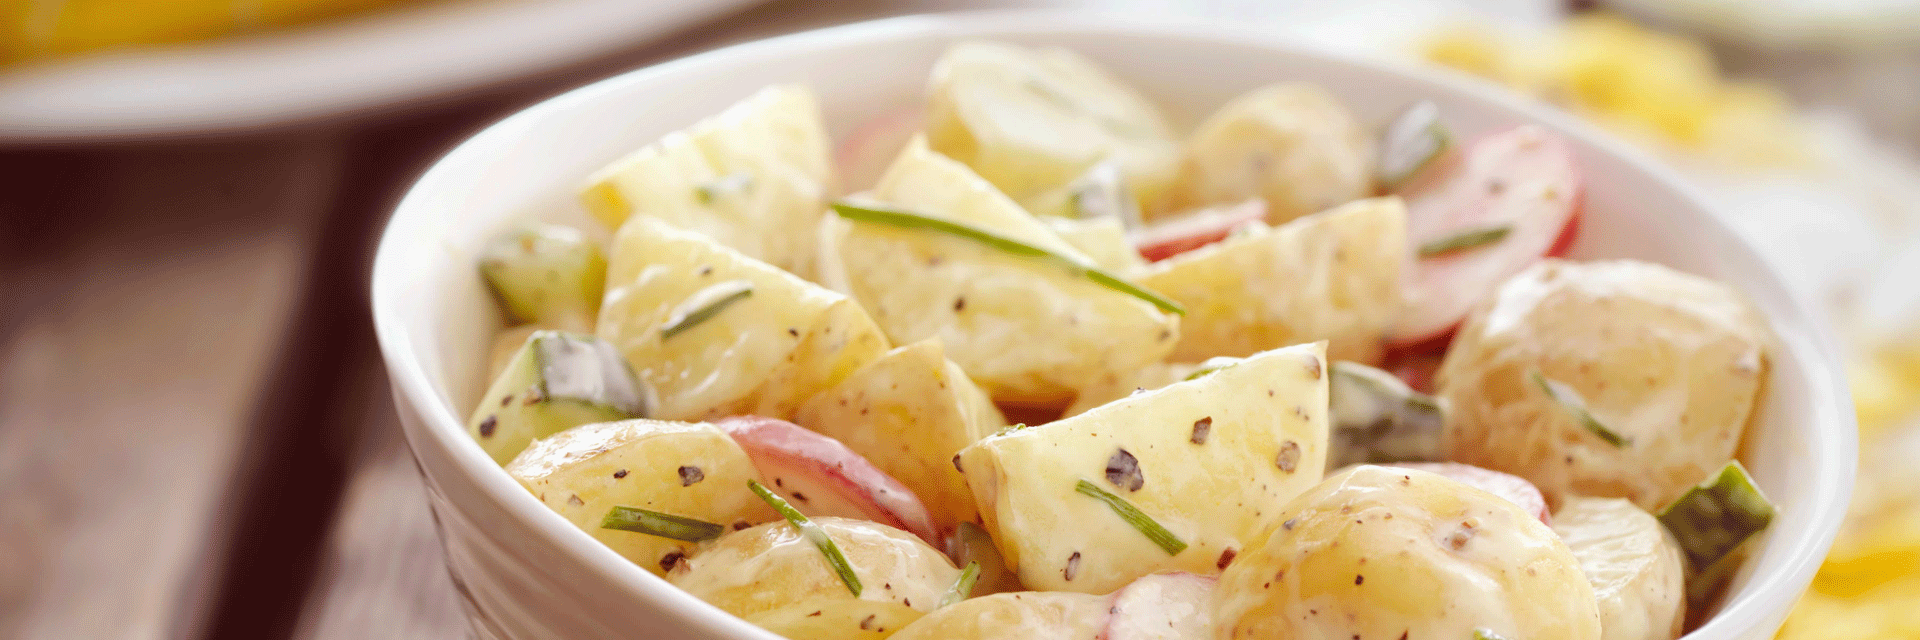 Insalata di patate con ravanelli e cetrioli